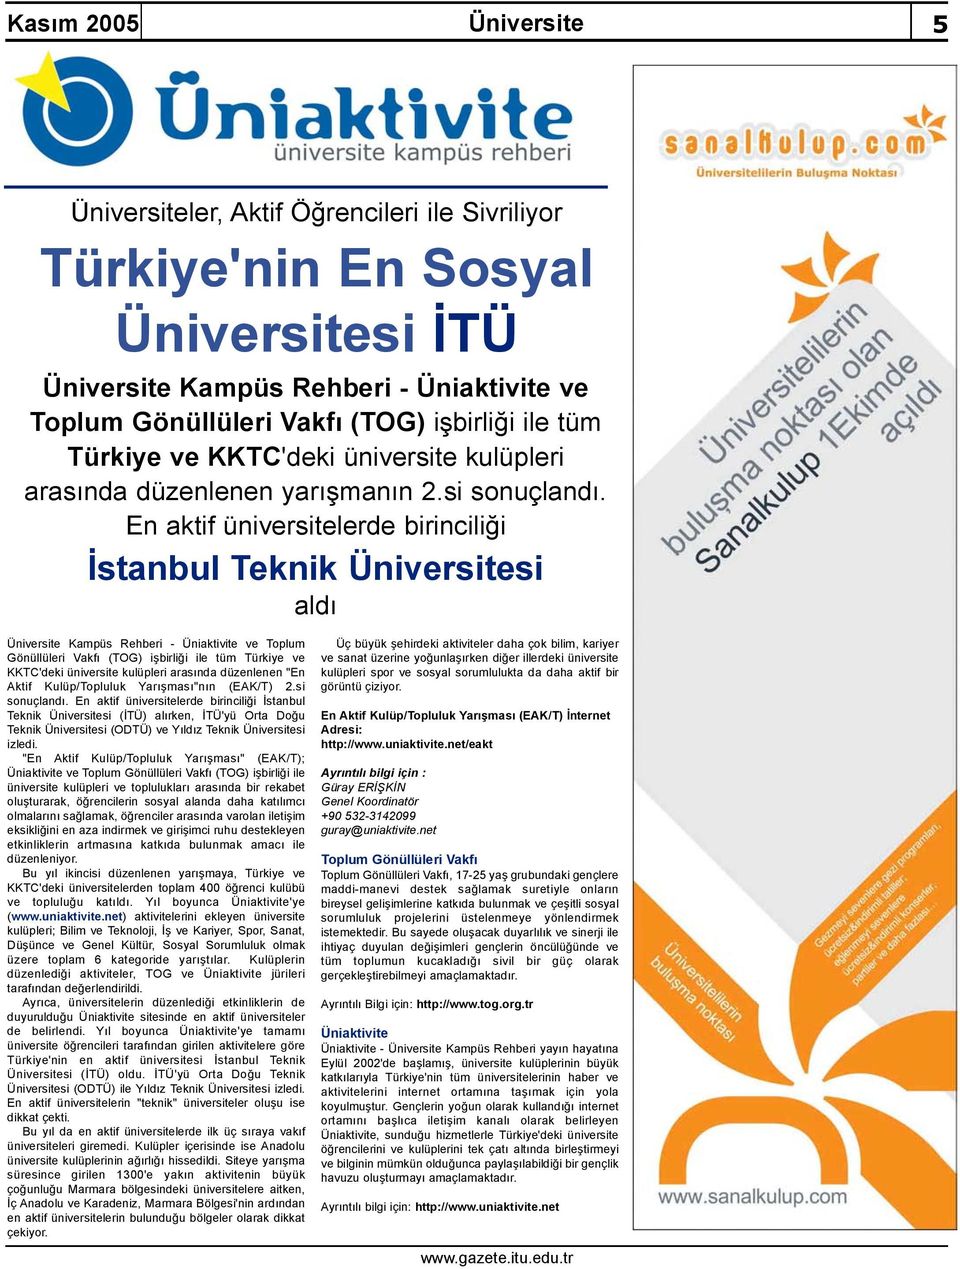 En aktif üniversitelerde birinciliği İstanbul Teknik Üniversitesi aldı Üniversite Kampüs Rehberi - Üniaktivite ve Toplum Gönüllüleri Vakfı (TOG) işbirliği ile tüm Türkiye ve KKTC'deki üniversite